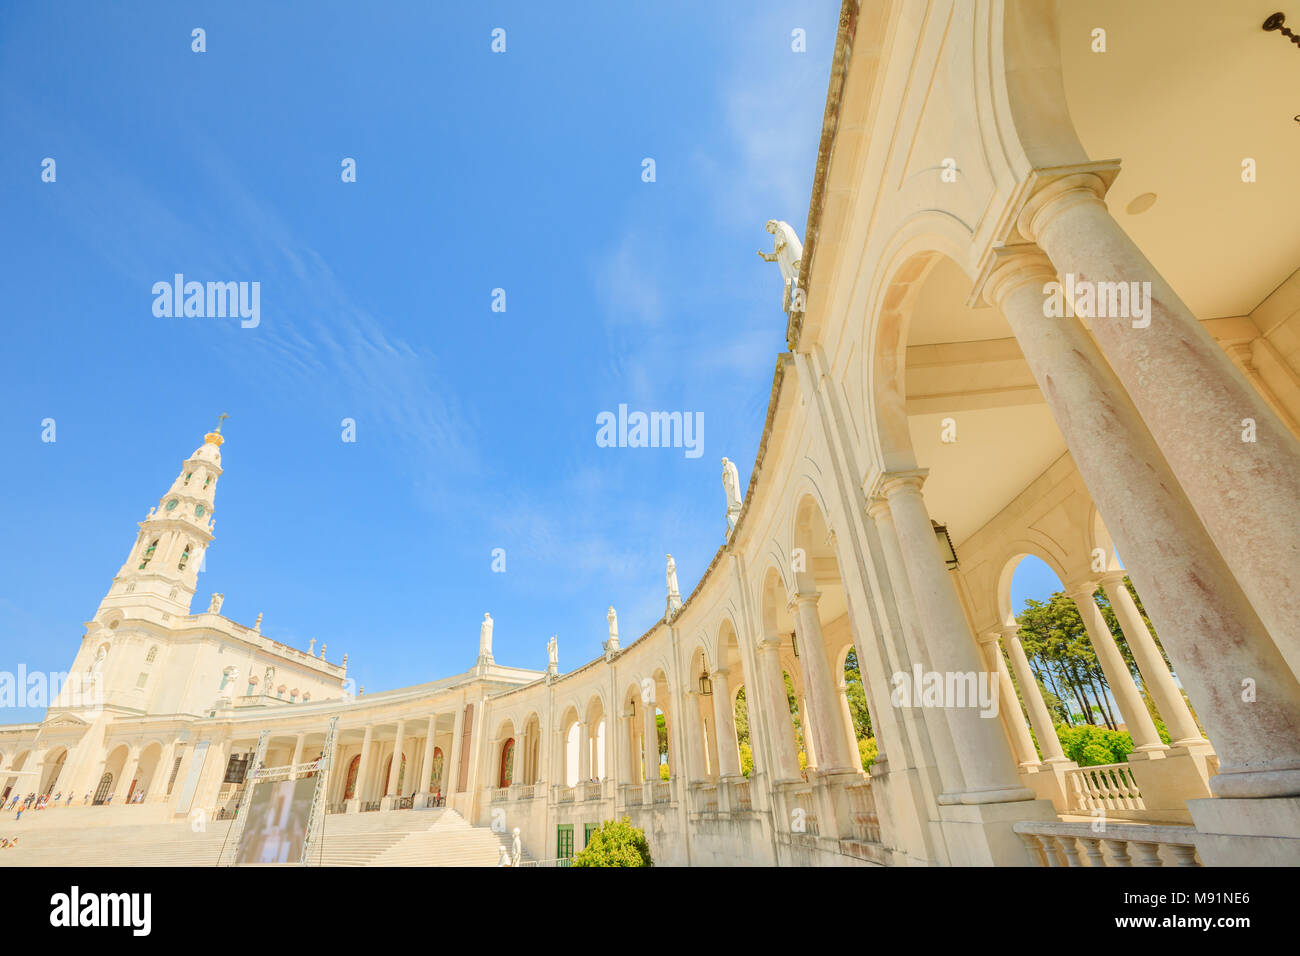 Sanctuaire de Notre Dame de Fatima dans le ciel bleu, le Centre du Portugal, l'un des plus importants sanctuaires mariaux et lieux de pèlerinage pour les catholiques. Basilica de Nossa Senhora de colonnade blanche. Banque D'Images